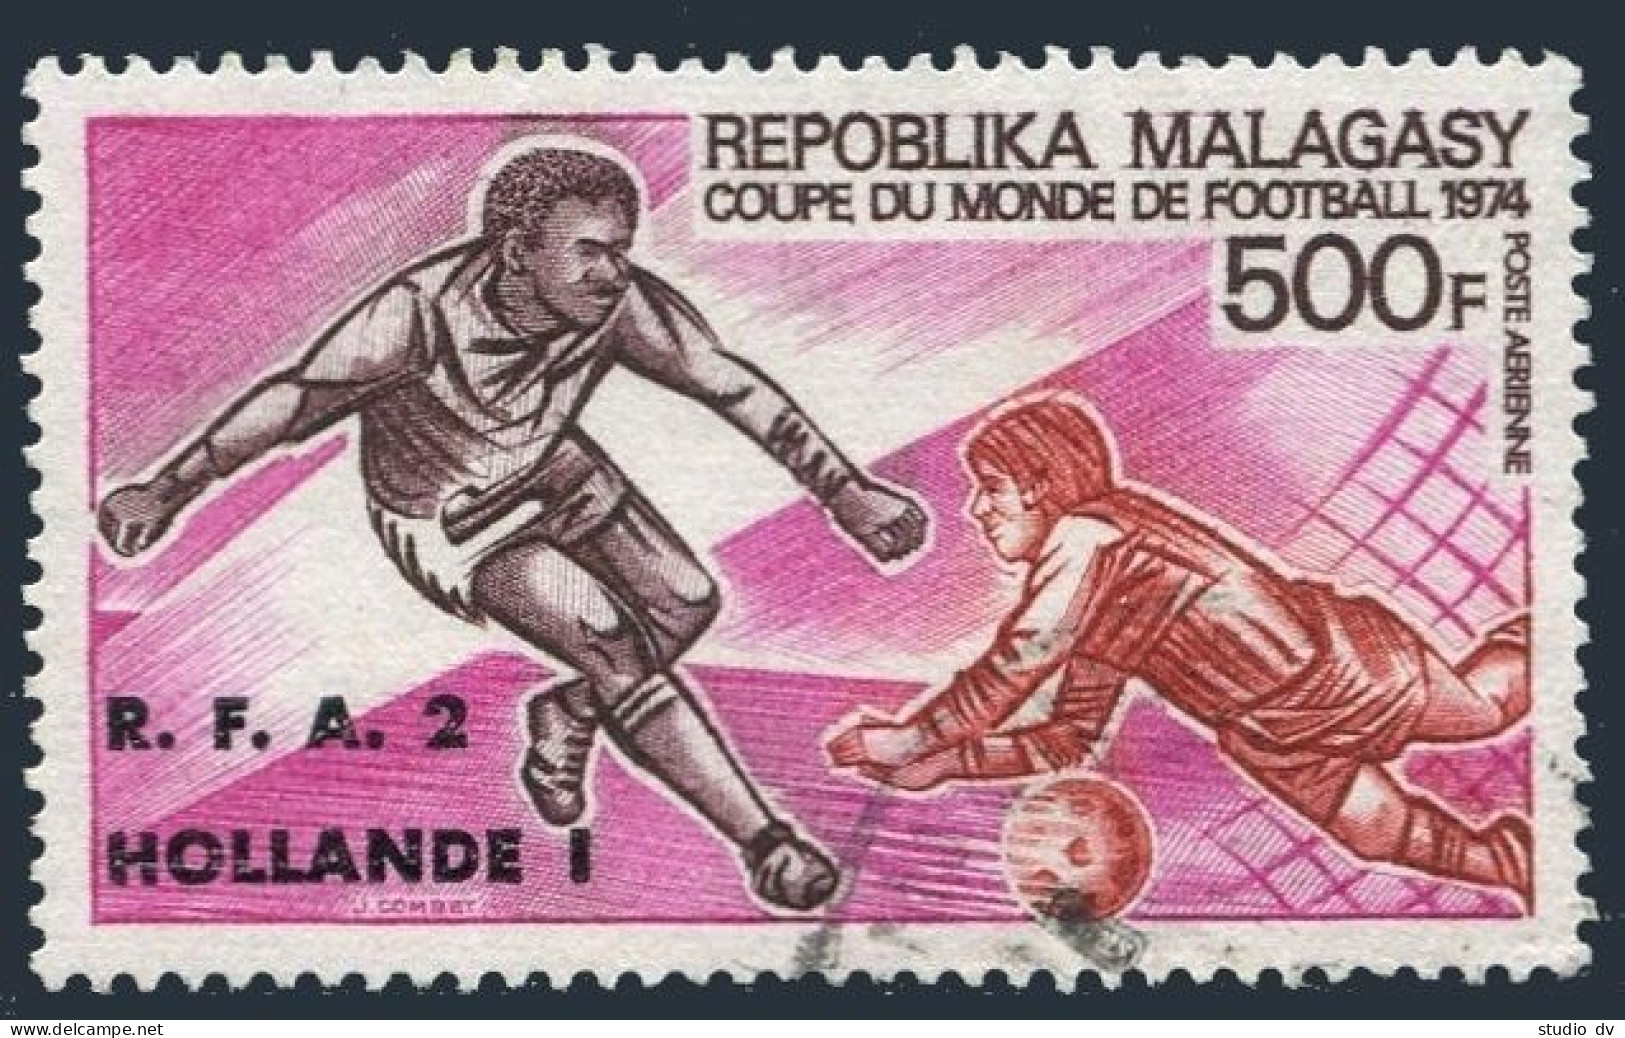 Malagasy C130,used.Michel 718. World Soccer Cup Munich-1974,Germany.Final. - Madagaskar (1960-...)